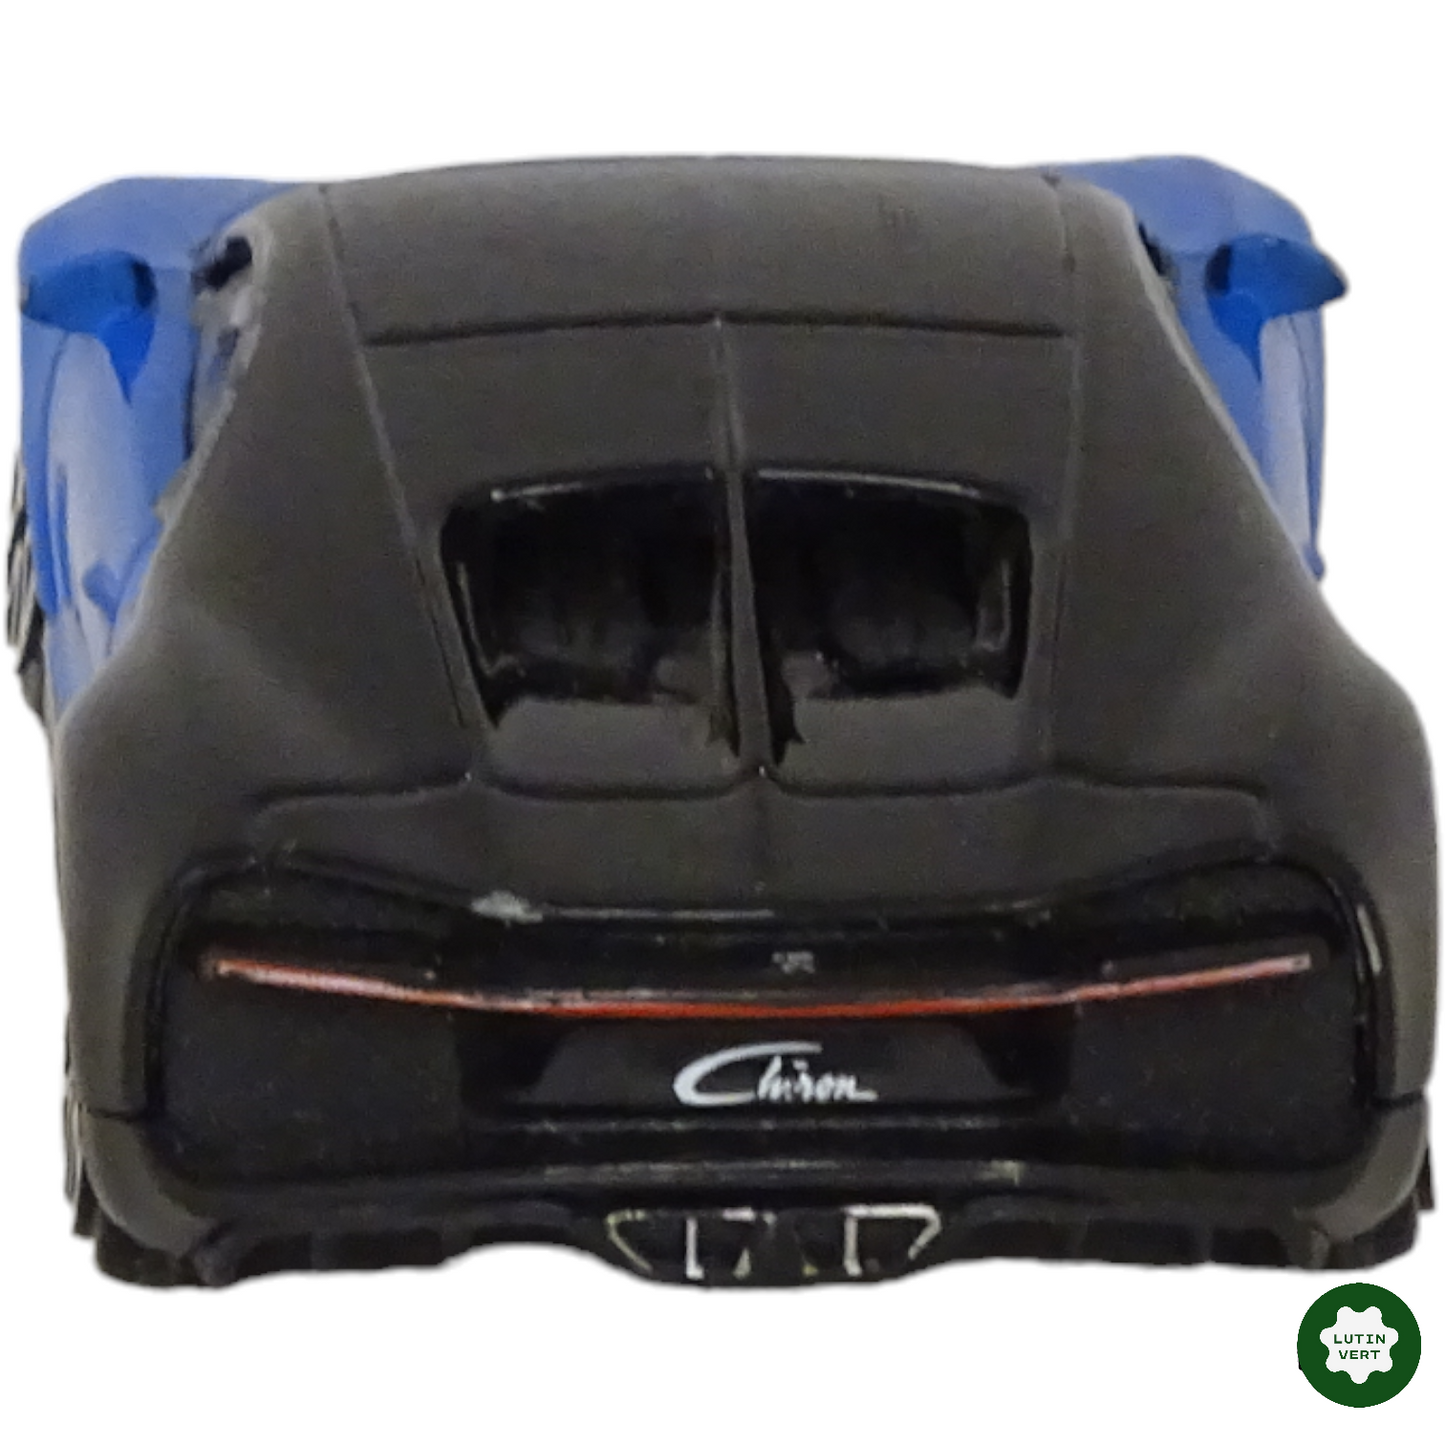 Bugatti Chiron bleue et noire d'occasion BURAGO - Dès 6 ans | Lutin Vert